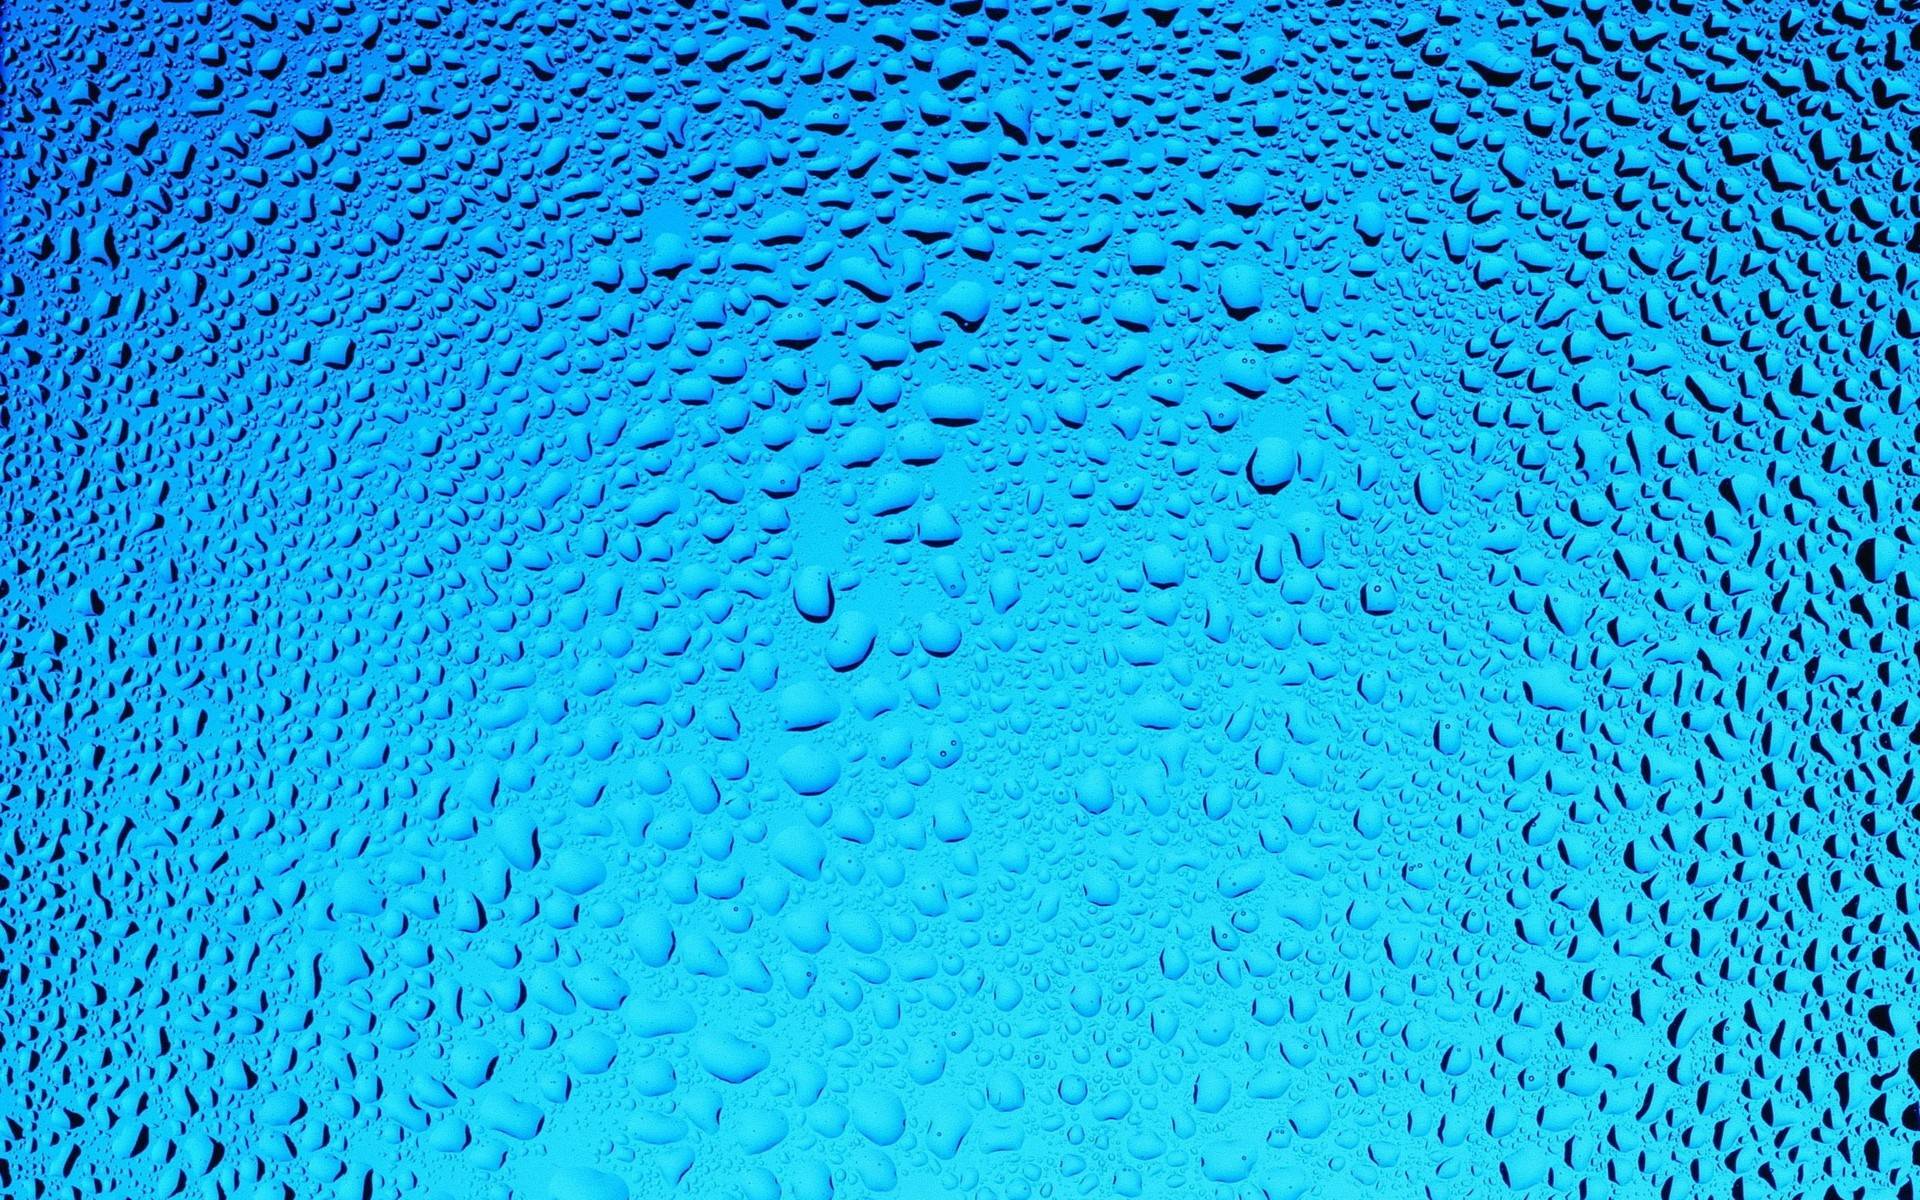 Raindrop Computer Wallpaper, Desktop Background 1920x1200 Id: 414823